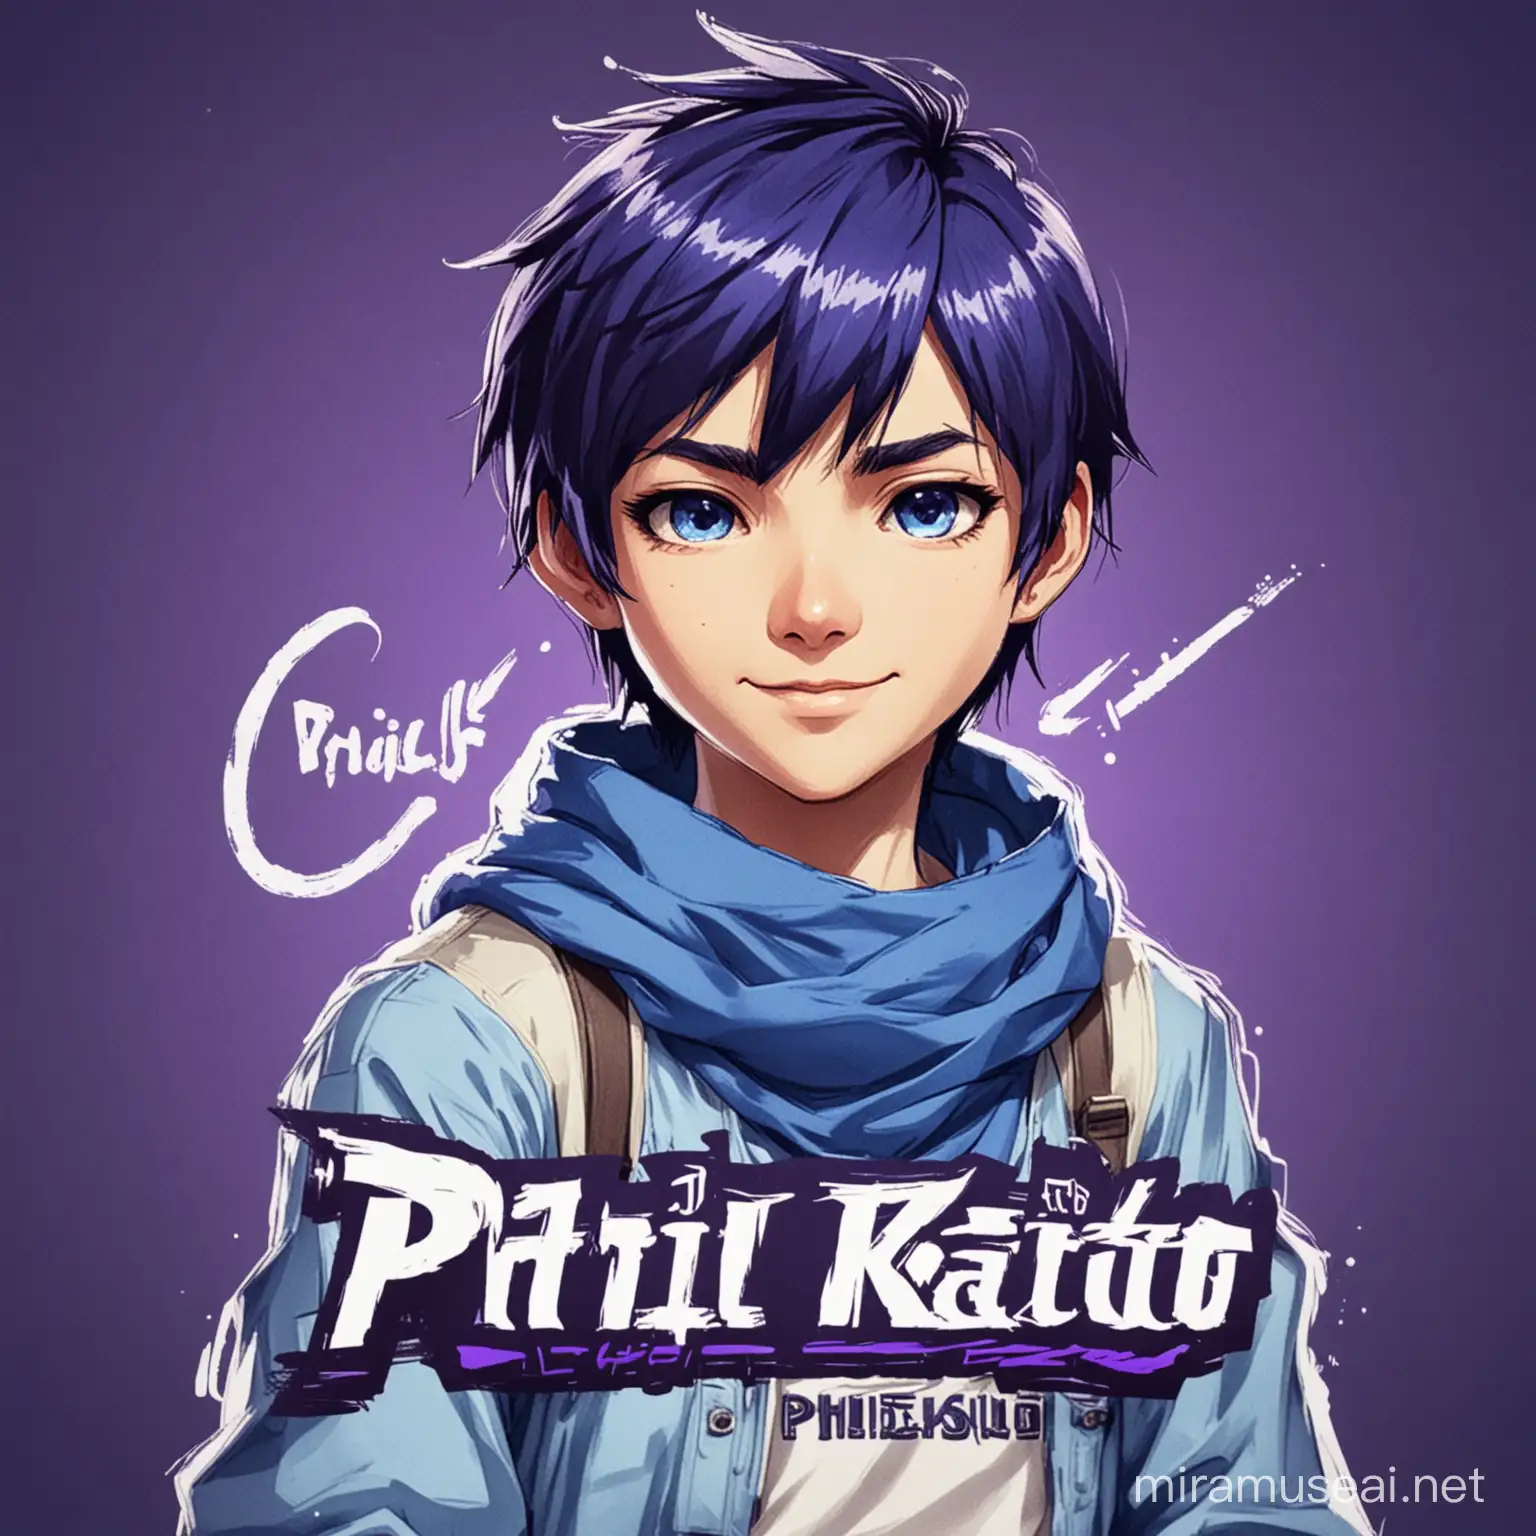 Kaito Kid inspirierter avatar als Twitchbanner mit Schriftzug "Phil_ist_Kaito" 